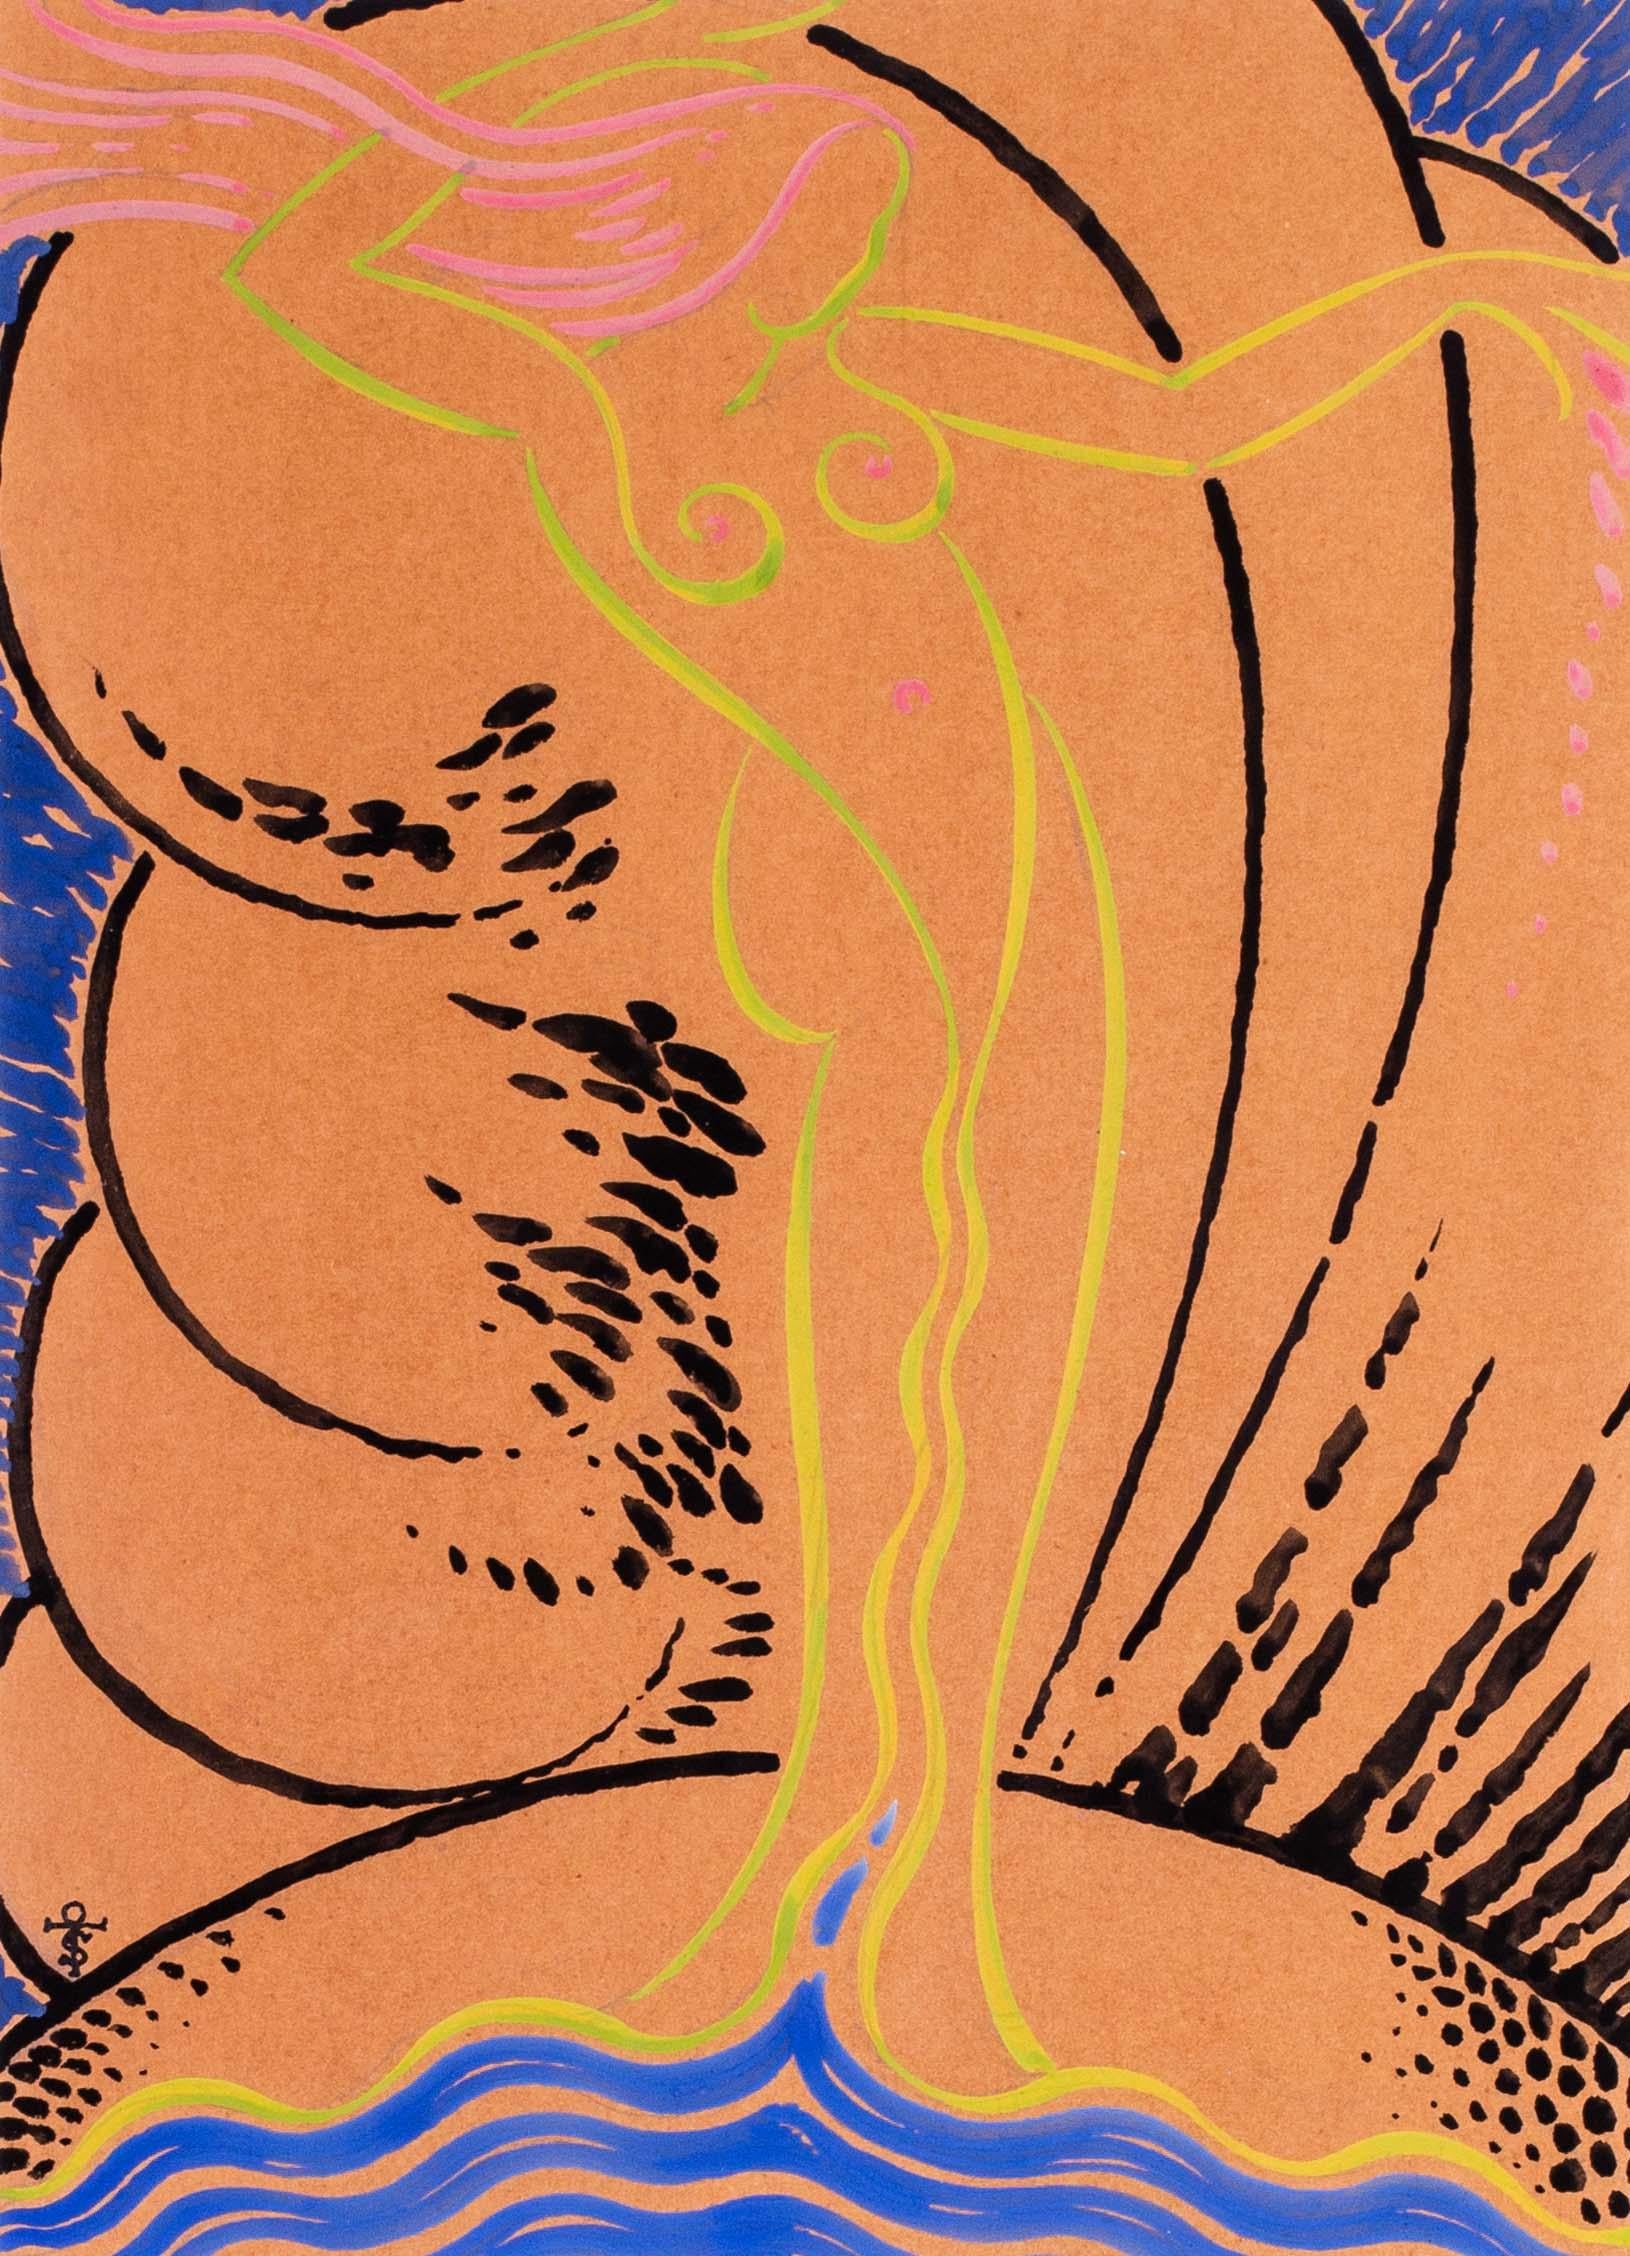 Der Kreis um Raoul Dufy (französisch, geb. 1877  - 1953)
Venus a la Coquille
Gouache / Aquarell auf Papier
Signiert mit Monogramm 'OTS' (unten links)
13.1/2 x 9,3/4 Zoll. (34,3 x 24,5 cm.)

